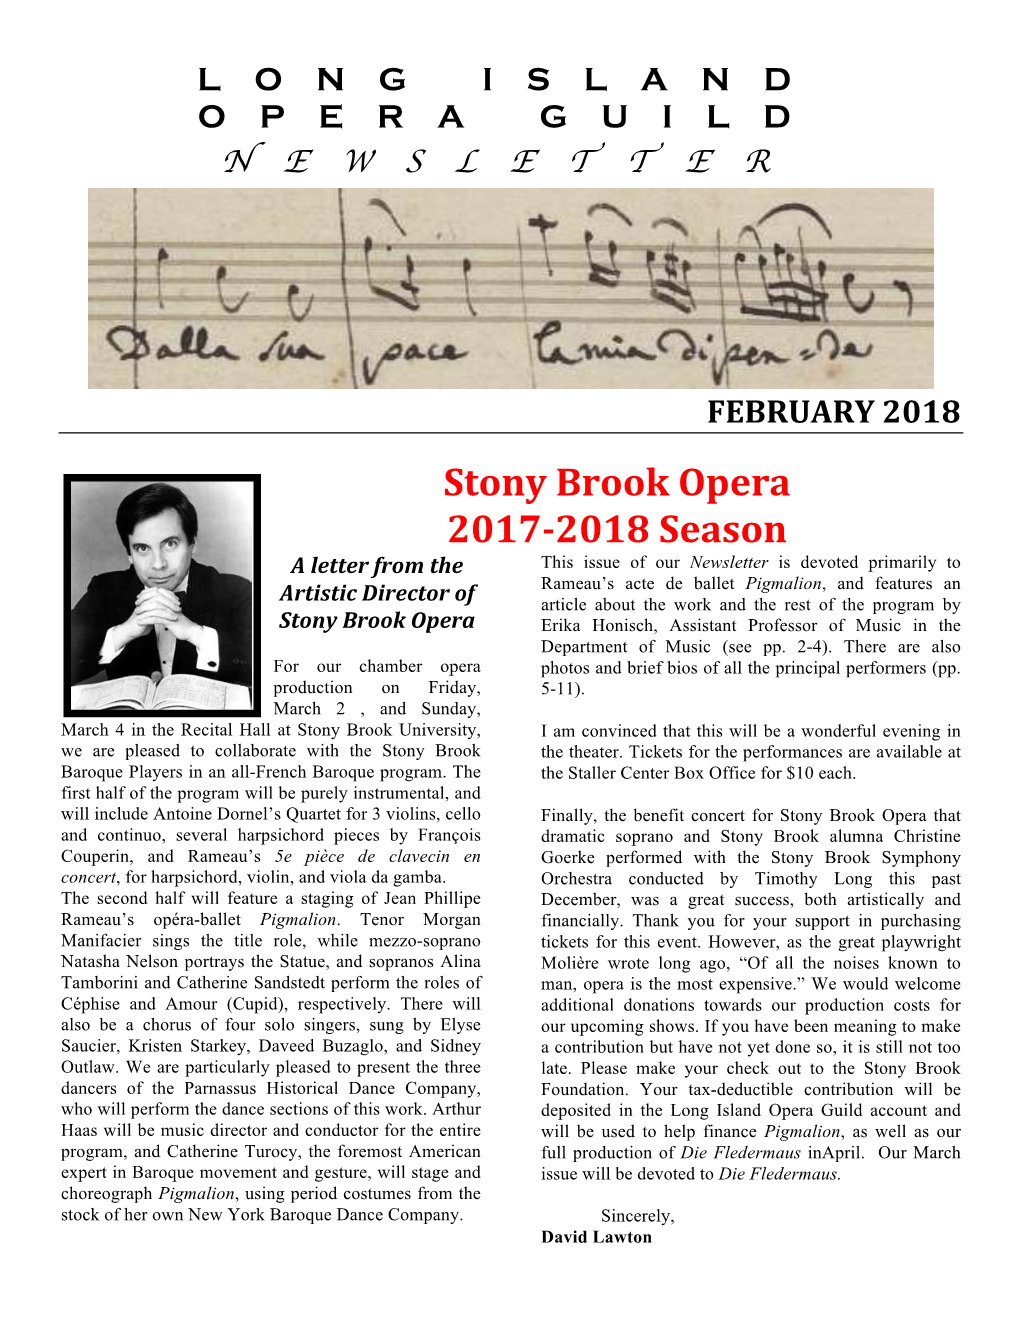 Stony Brook Opera 2017-2018 Season